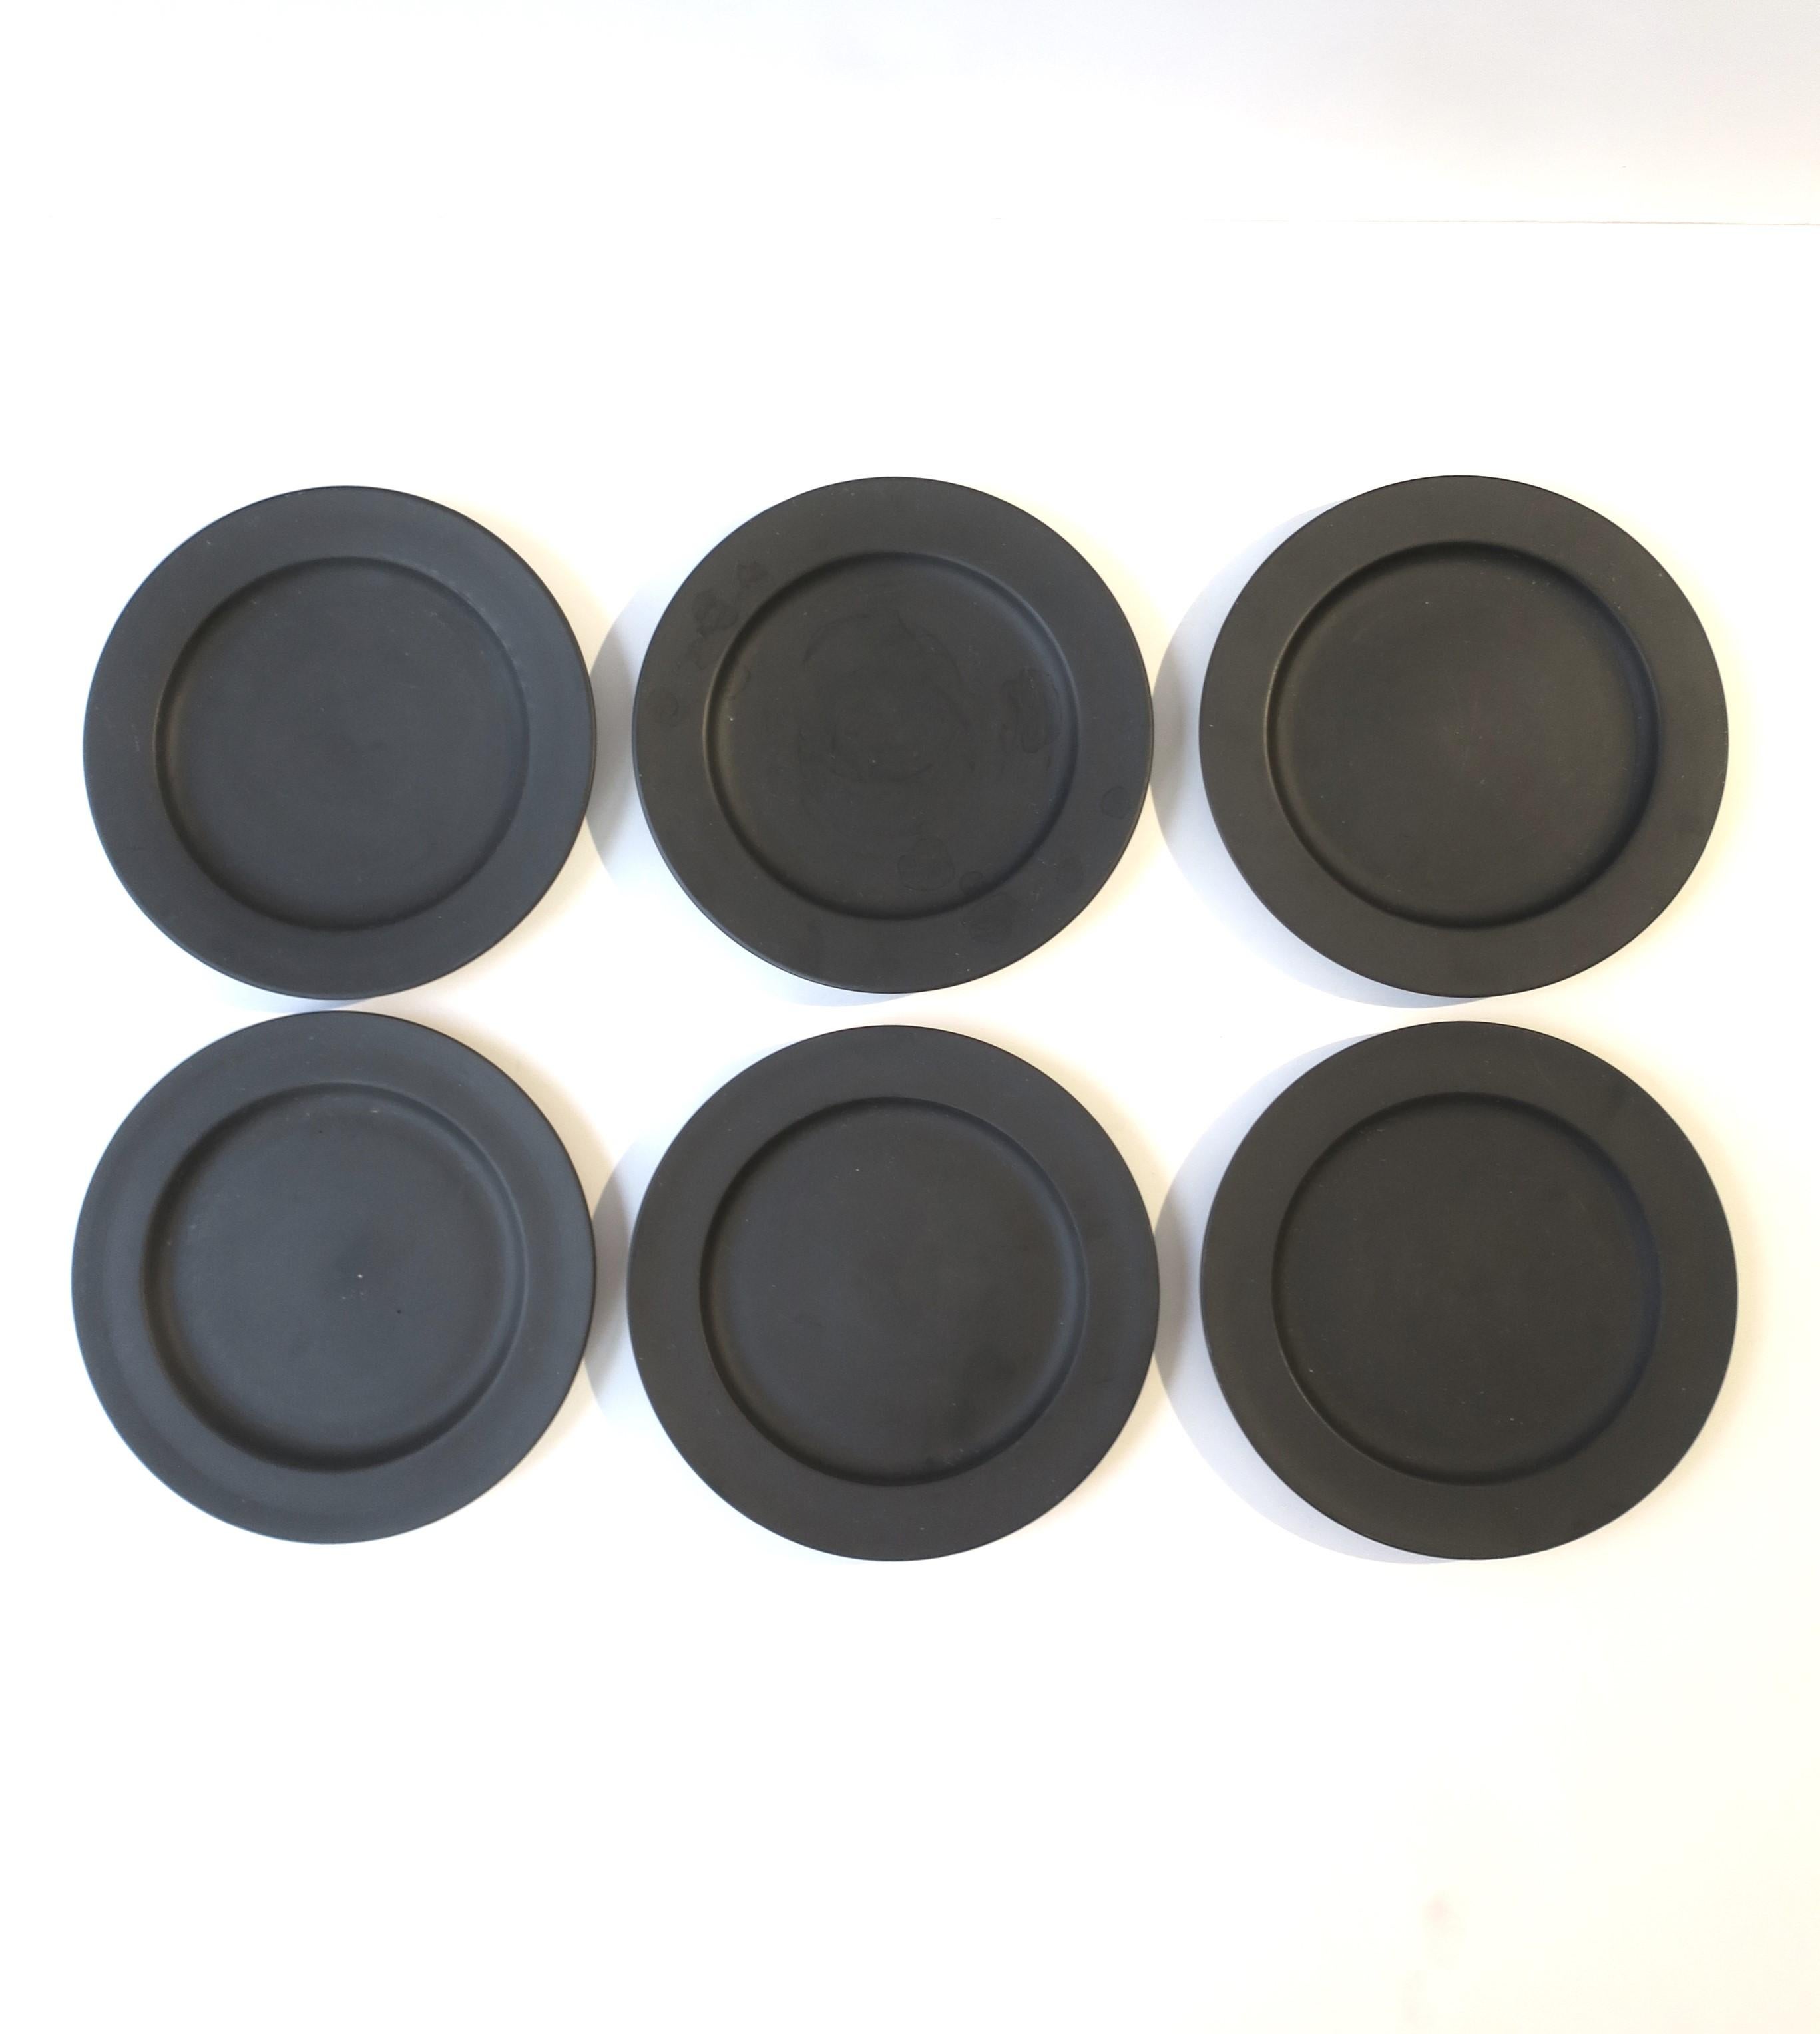 Un bel ensemble de six (6) assiettes anglaises en basalte noir par Wedgwood, vers le début ou le milieu du 20e siècle, Angleterre. Les assiettes peuvent être utilisées de multiples façons (assiettes à apéritif, à dessert, etc., ou décoratives sur un